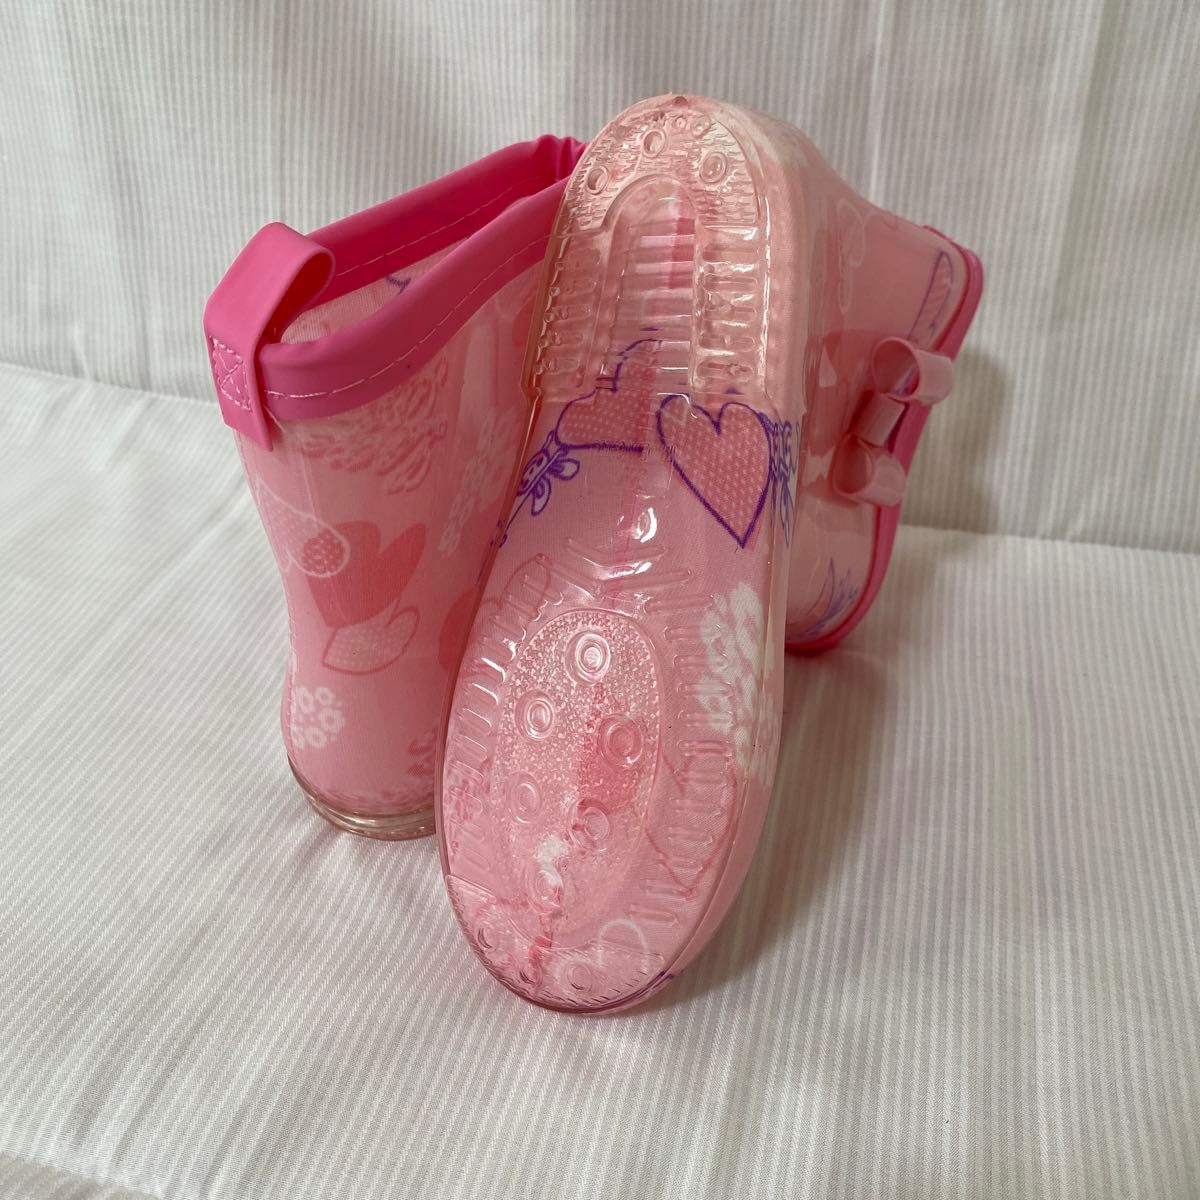 18cm レインブーツ 長靴 キッズ レインシューズ ハート ピンク リボン かわいい ピンク